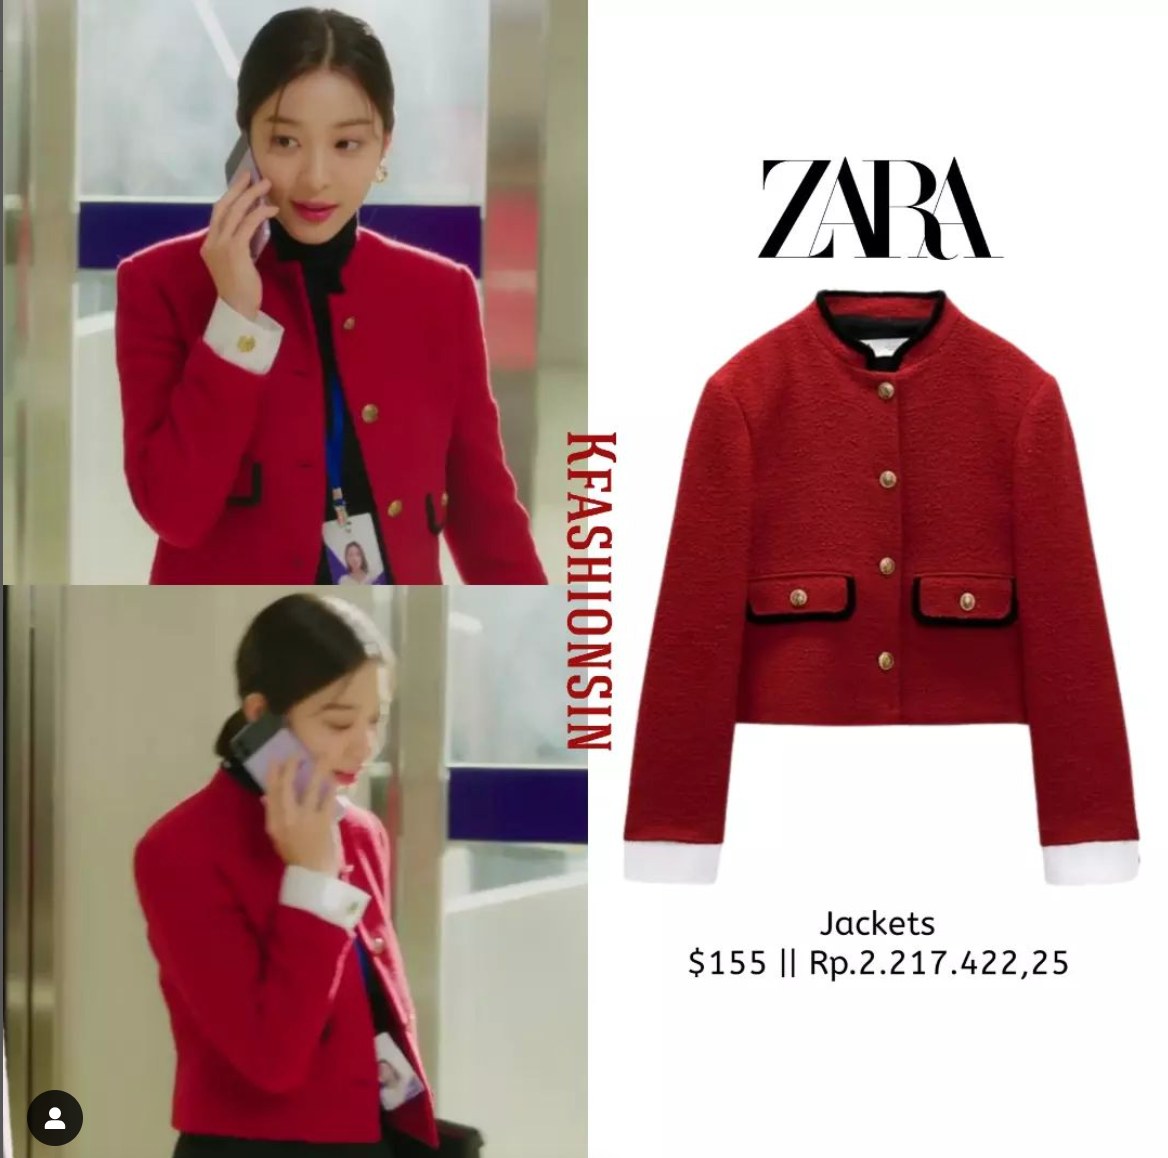 Với áo khoác lửng, Jin Young Seo chọn màu đỏ nổi bật và kết hợp với áo cổ lọ màu đen và quần âu. Chiếc áo khoác này cũng có giá hết sức bình dân, đến từ thương hiệu Zara.